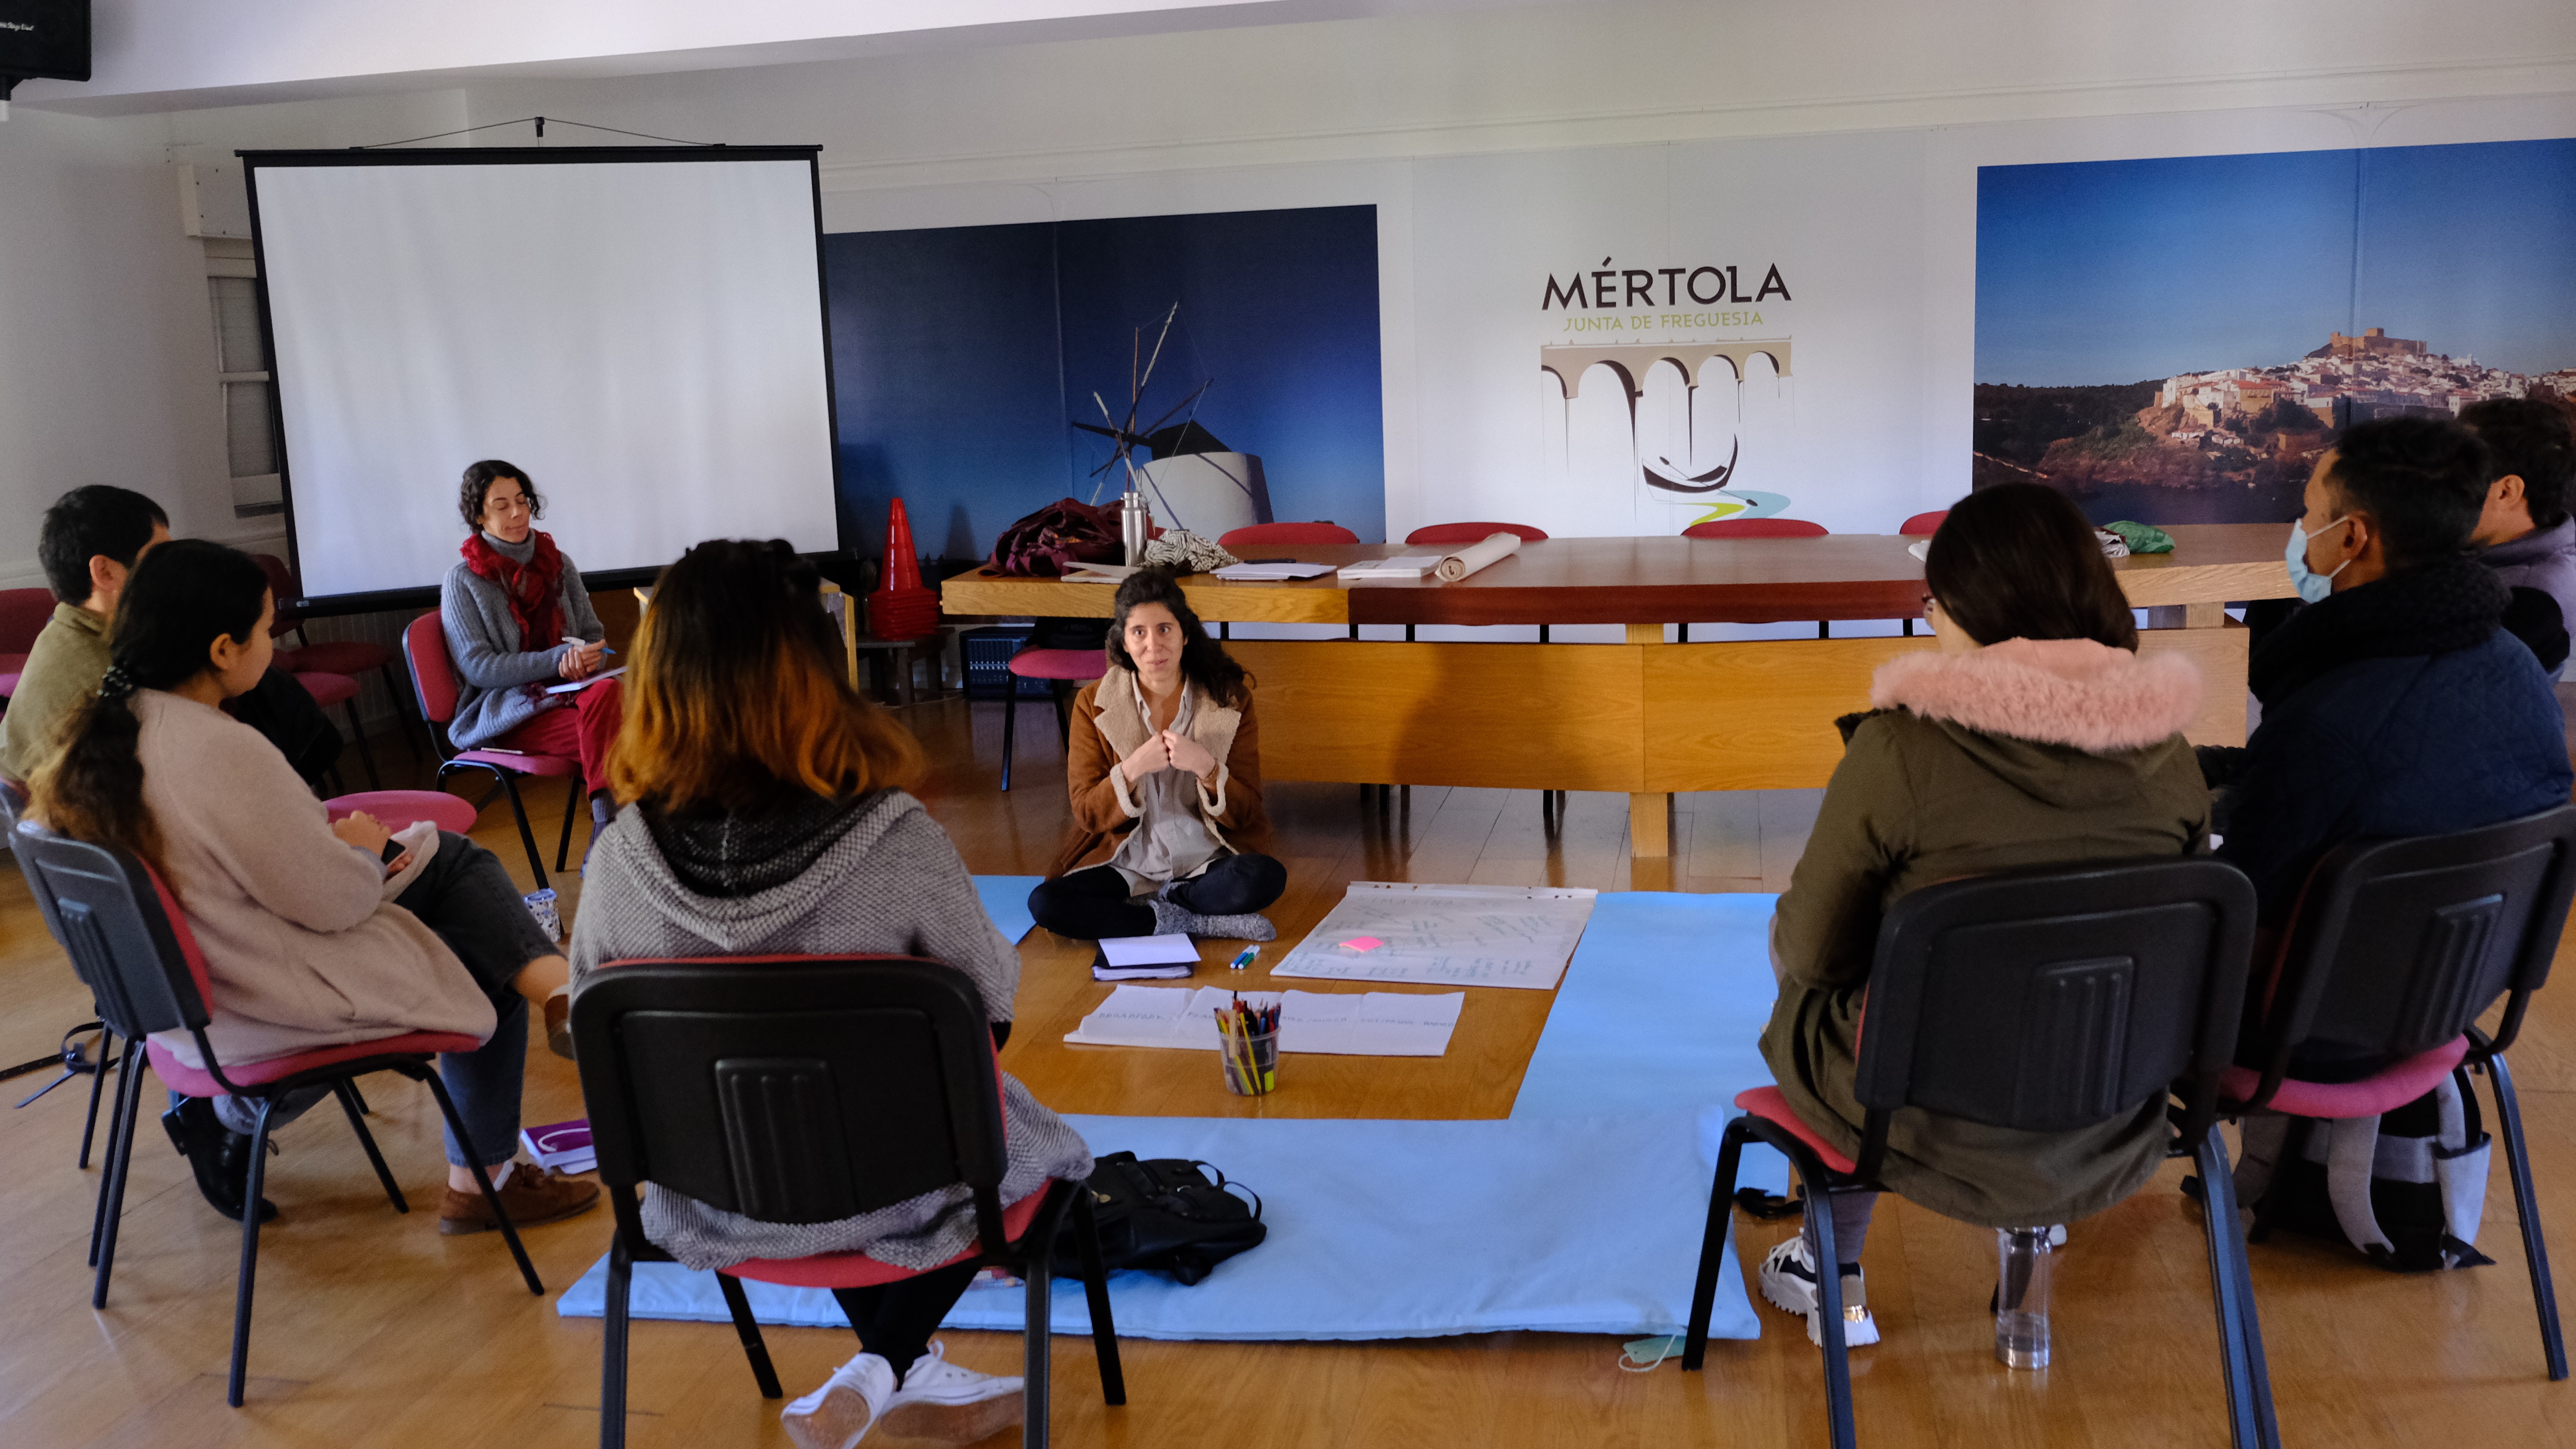 Ein Meeting bei Terra de Abrigo in Mertola, Portugal (Foto: Marta Vidal)